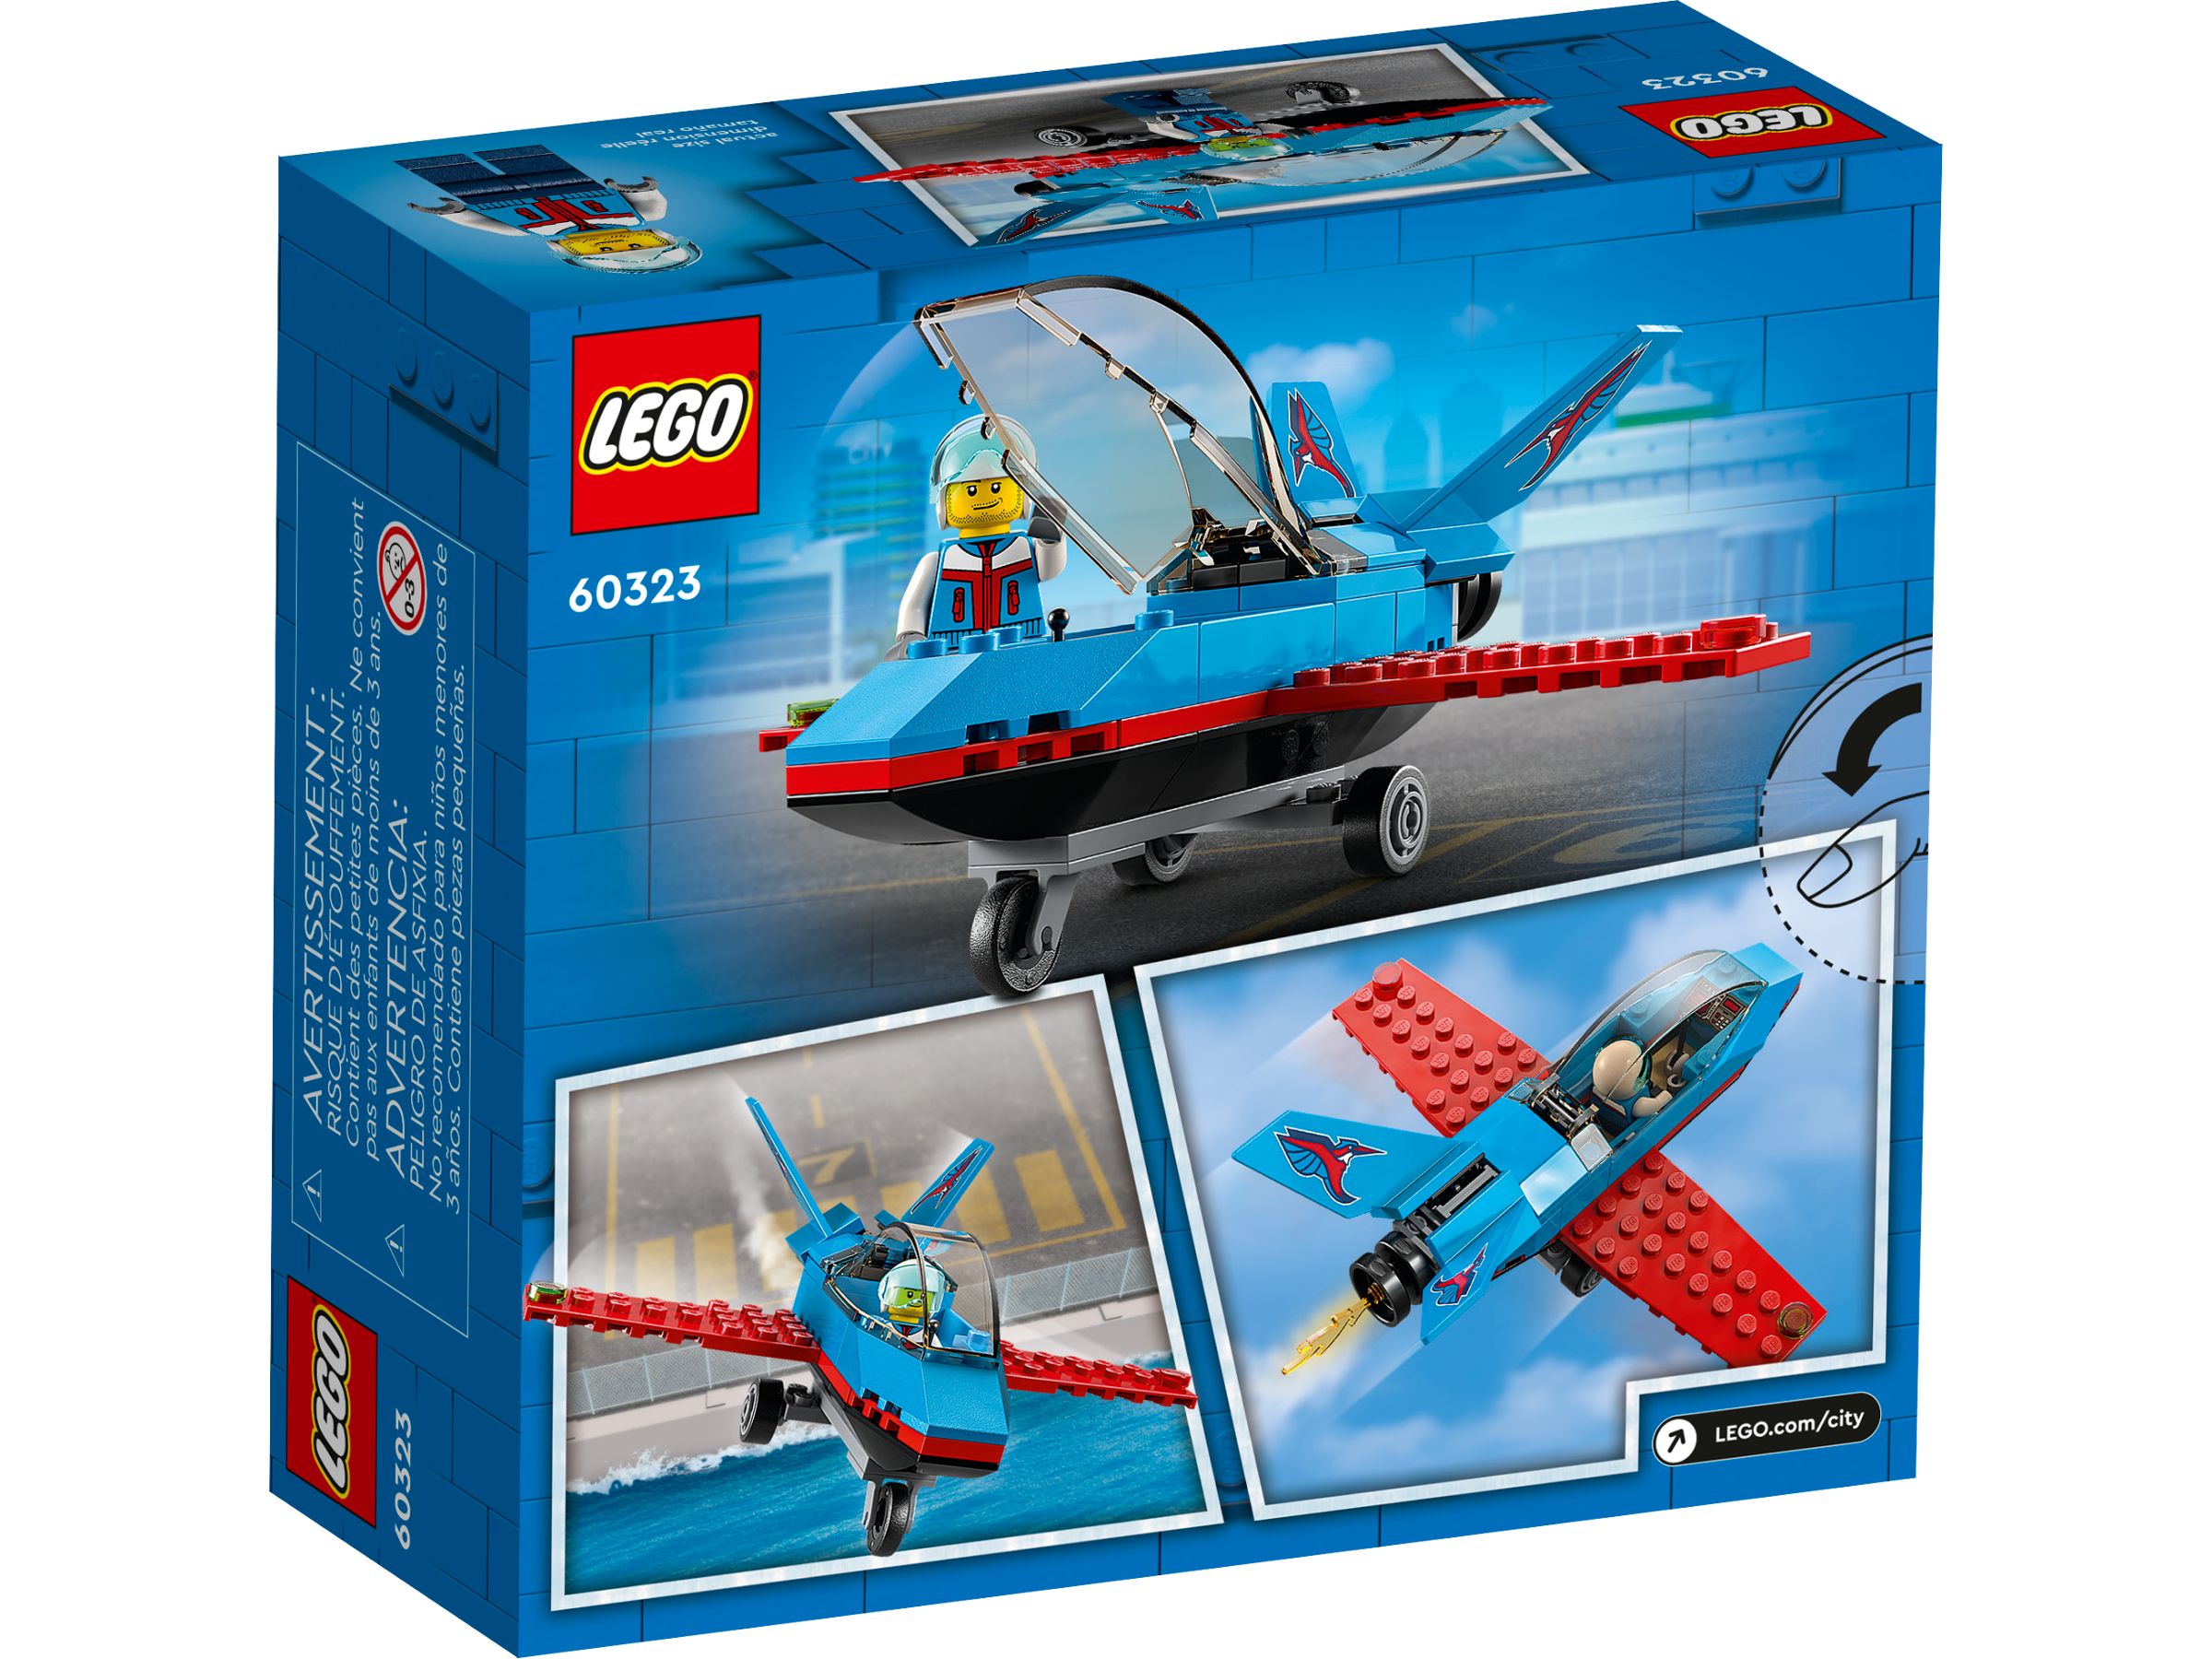 LEGO City 60323 Stuntflugzeug LEGO_60323_alt4.jpg